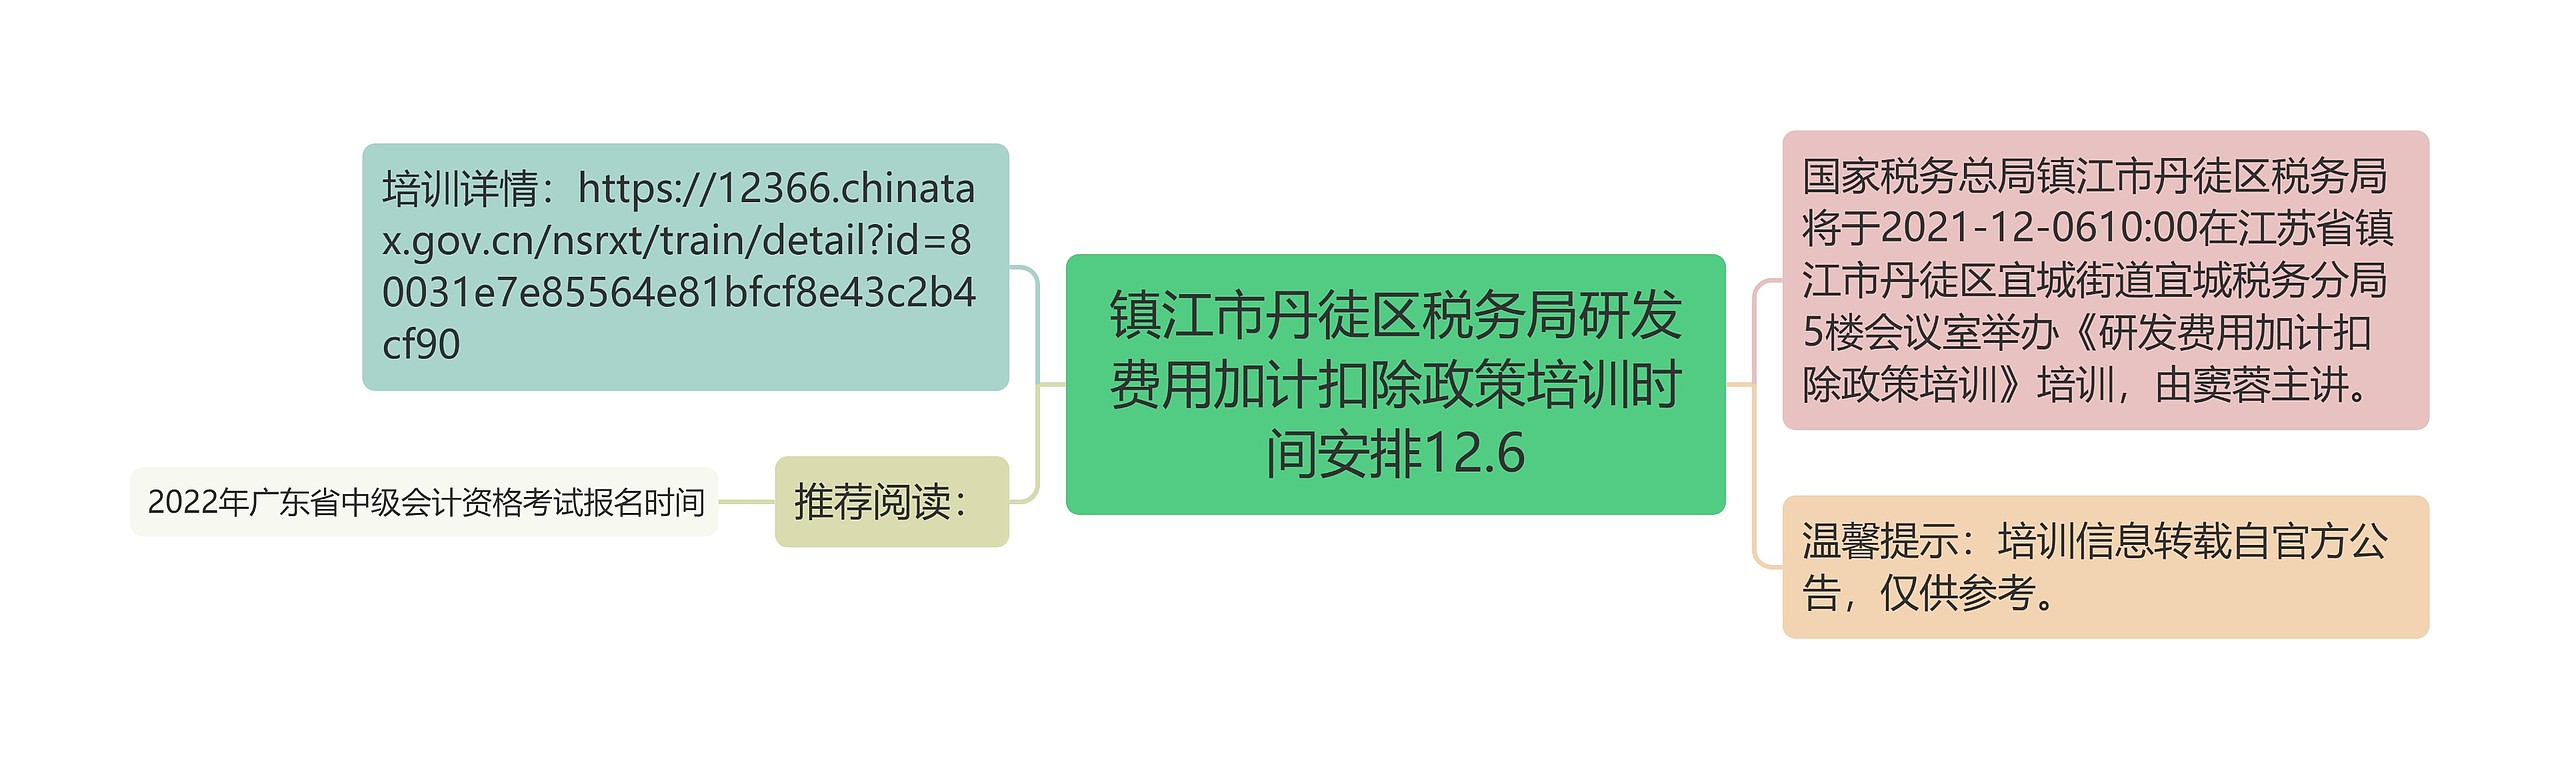 镇江市丹徒区税务局研发费用加计扣除政策培训时间安排12.6思维导图